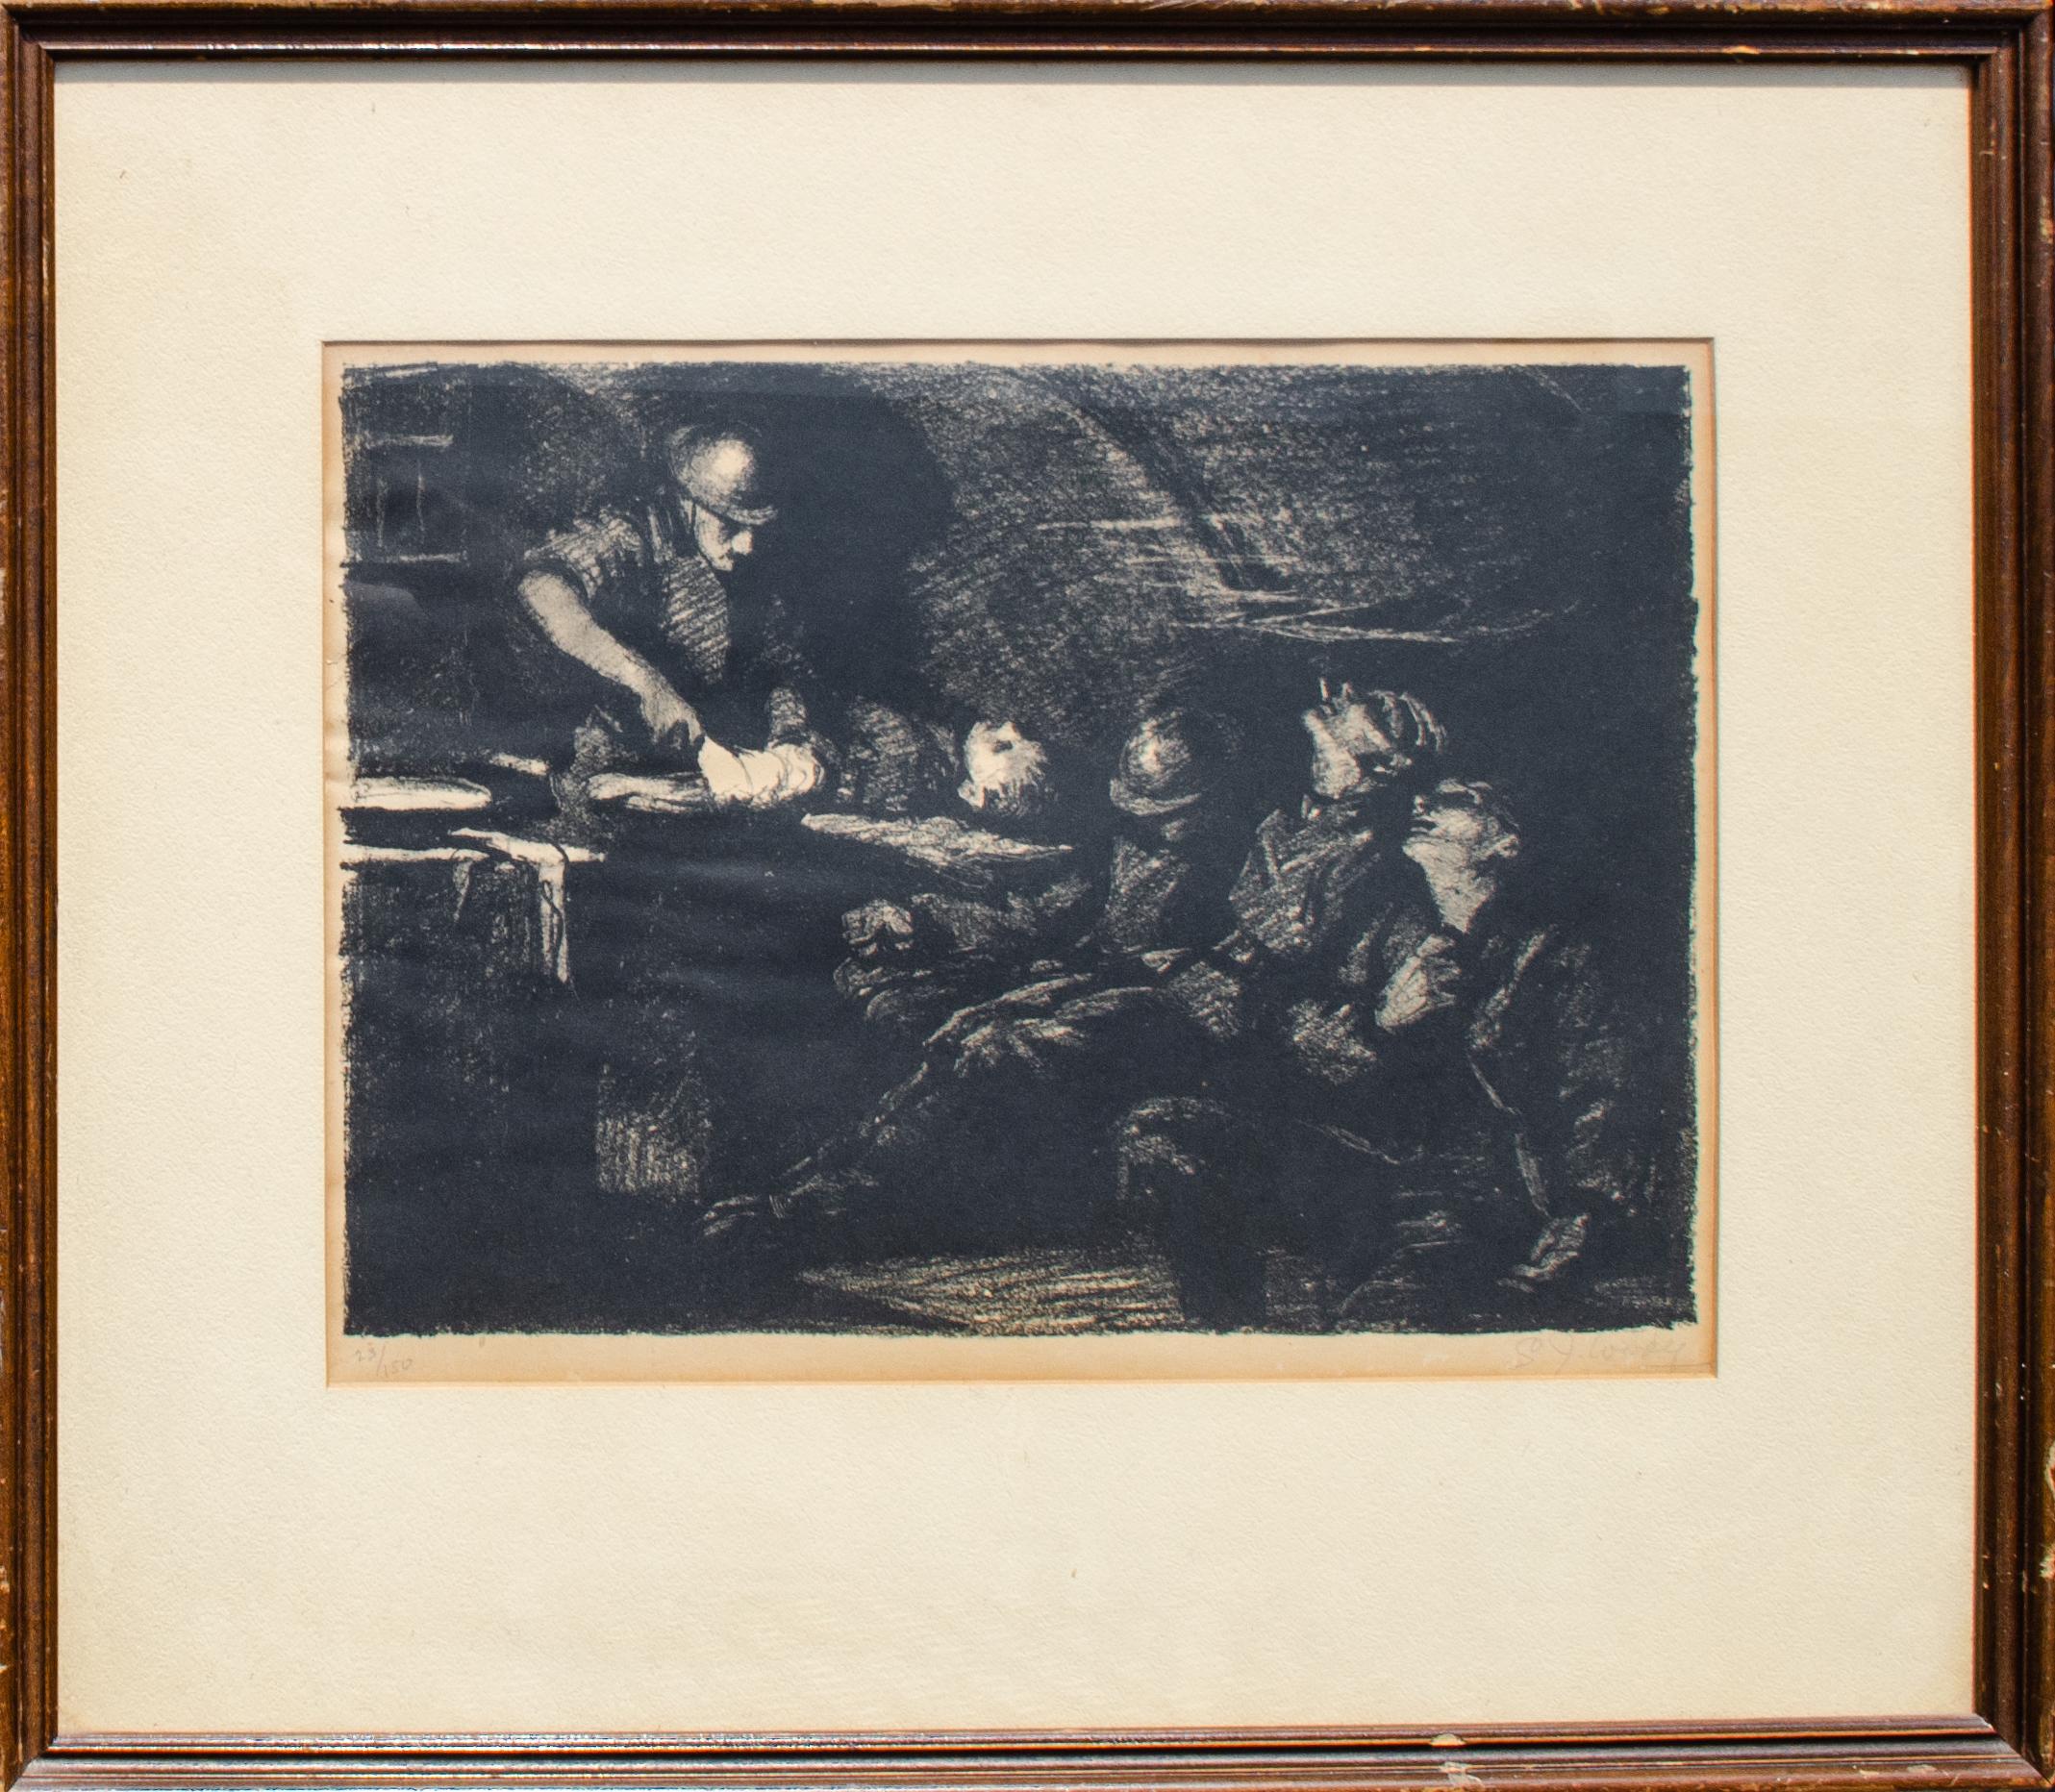 Samuel J. Woolf (américain, 1880-1948)
Poste de secours à Seicheprey
Lithographie
Vue : 11 x 14 1/2 in.
Encadré : 20 x 23 x 1 in.
Signé en bas à droite : S. J. Woolf
Numéroté en bas à gauche : 23/150

Cette estampe est basée sur la peinture à